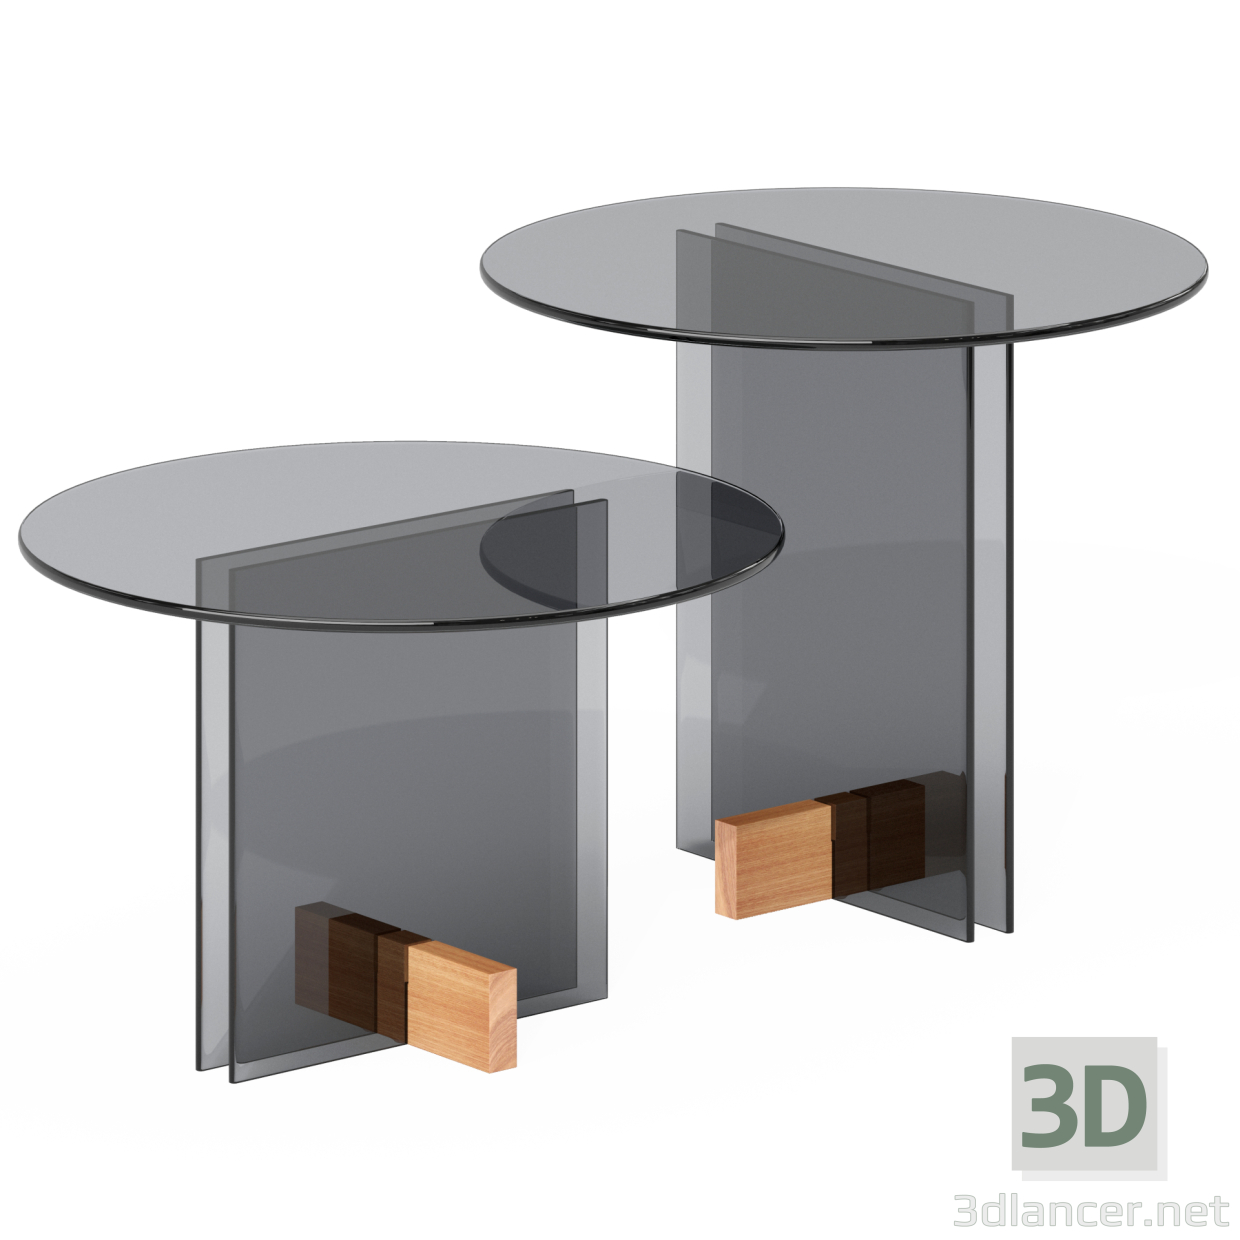 Basse-Tisch 3D-Modell kaufen - Rendern